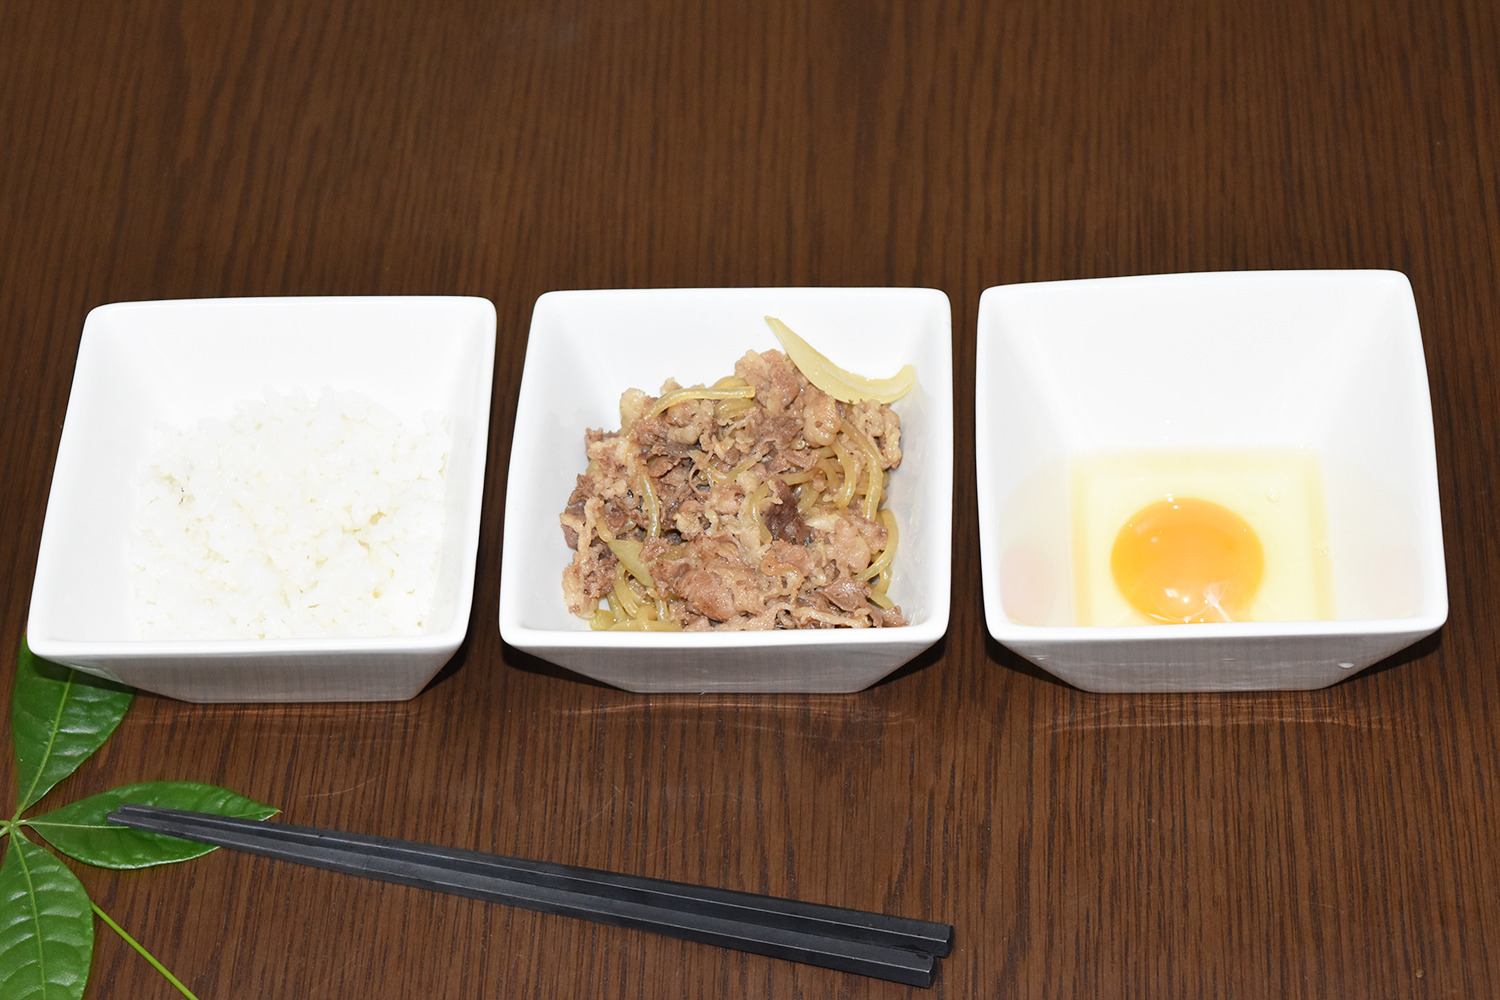 和食の職人が作る誰でも簡単まかないレシピ 和食の職人が作った 超簡単 牛丼の素